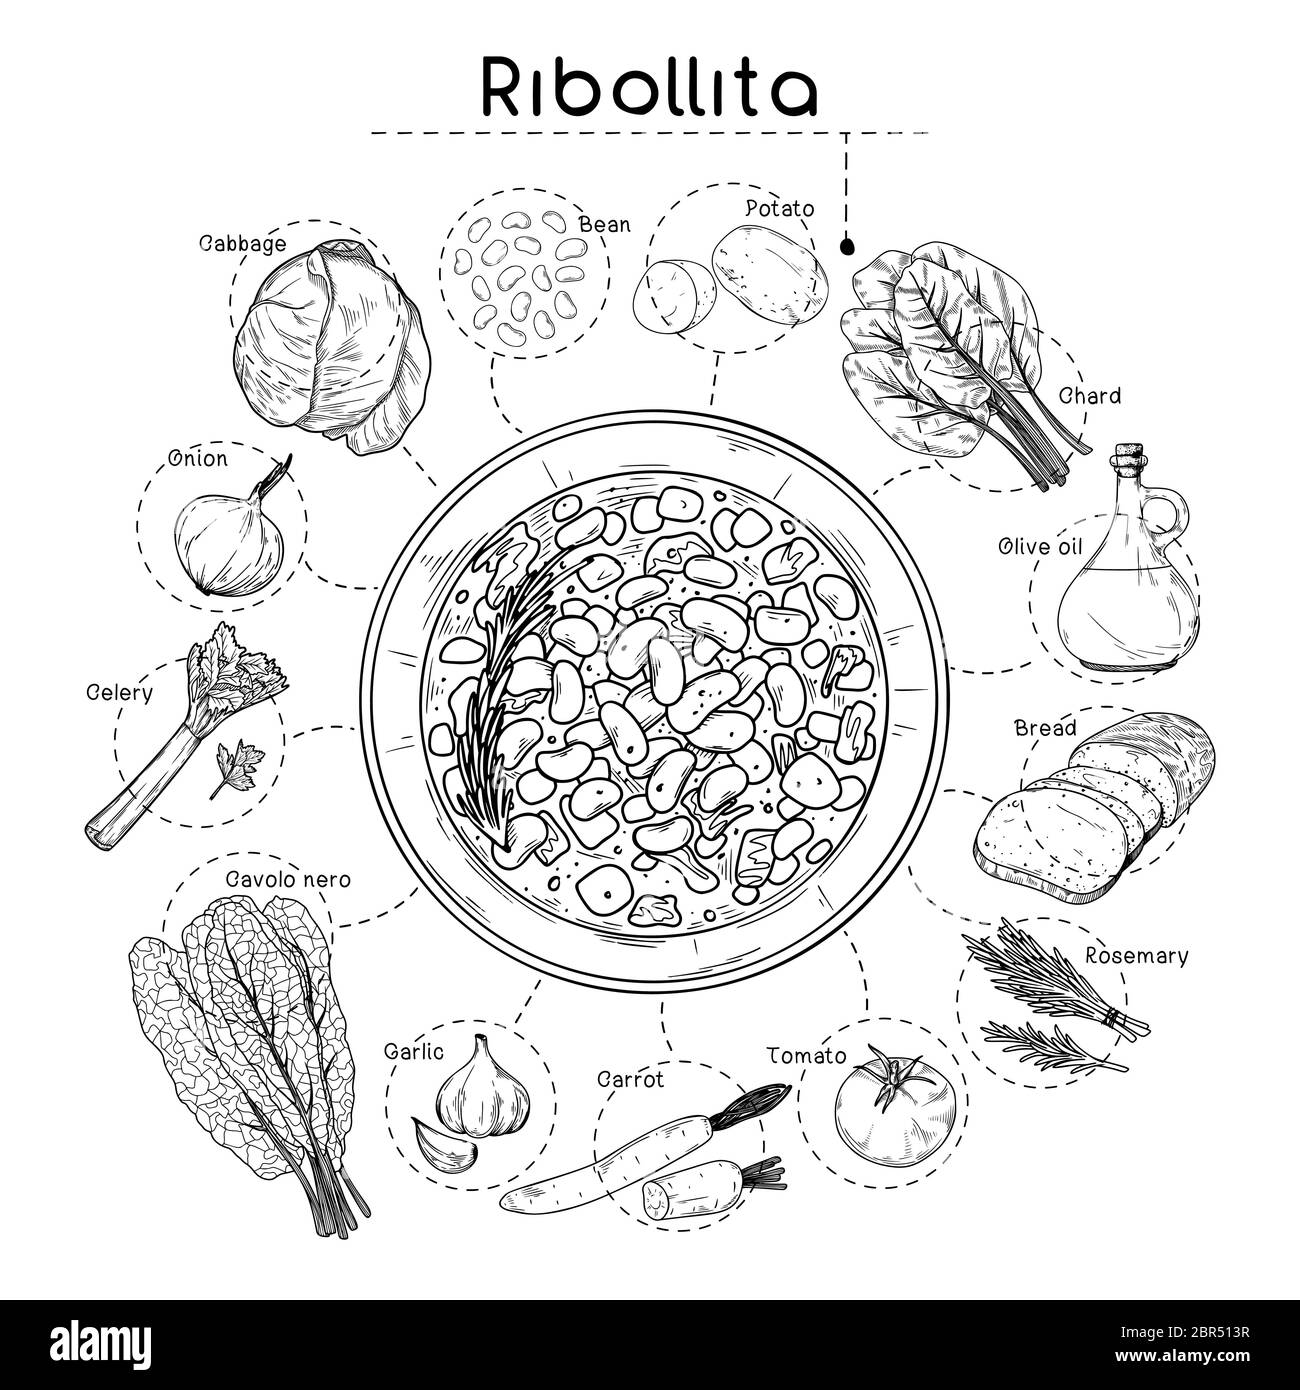 Recette de soupe italienne. Ribollita. Assiette avec soupe et différents ingrédients isolés sur fond blanc. Illustration vectorielle Illustration de Vecteur